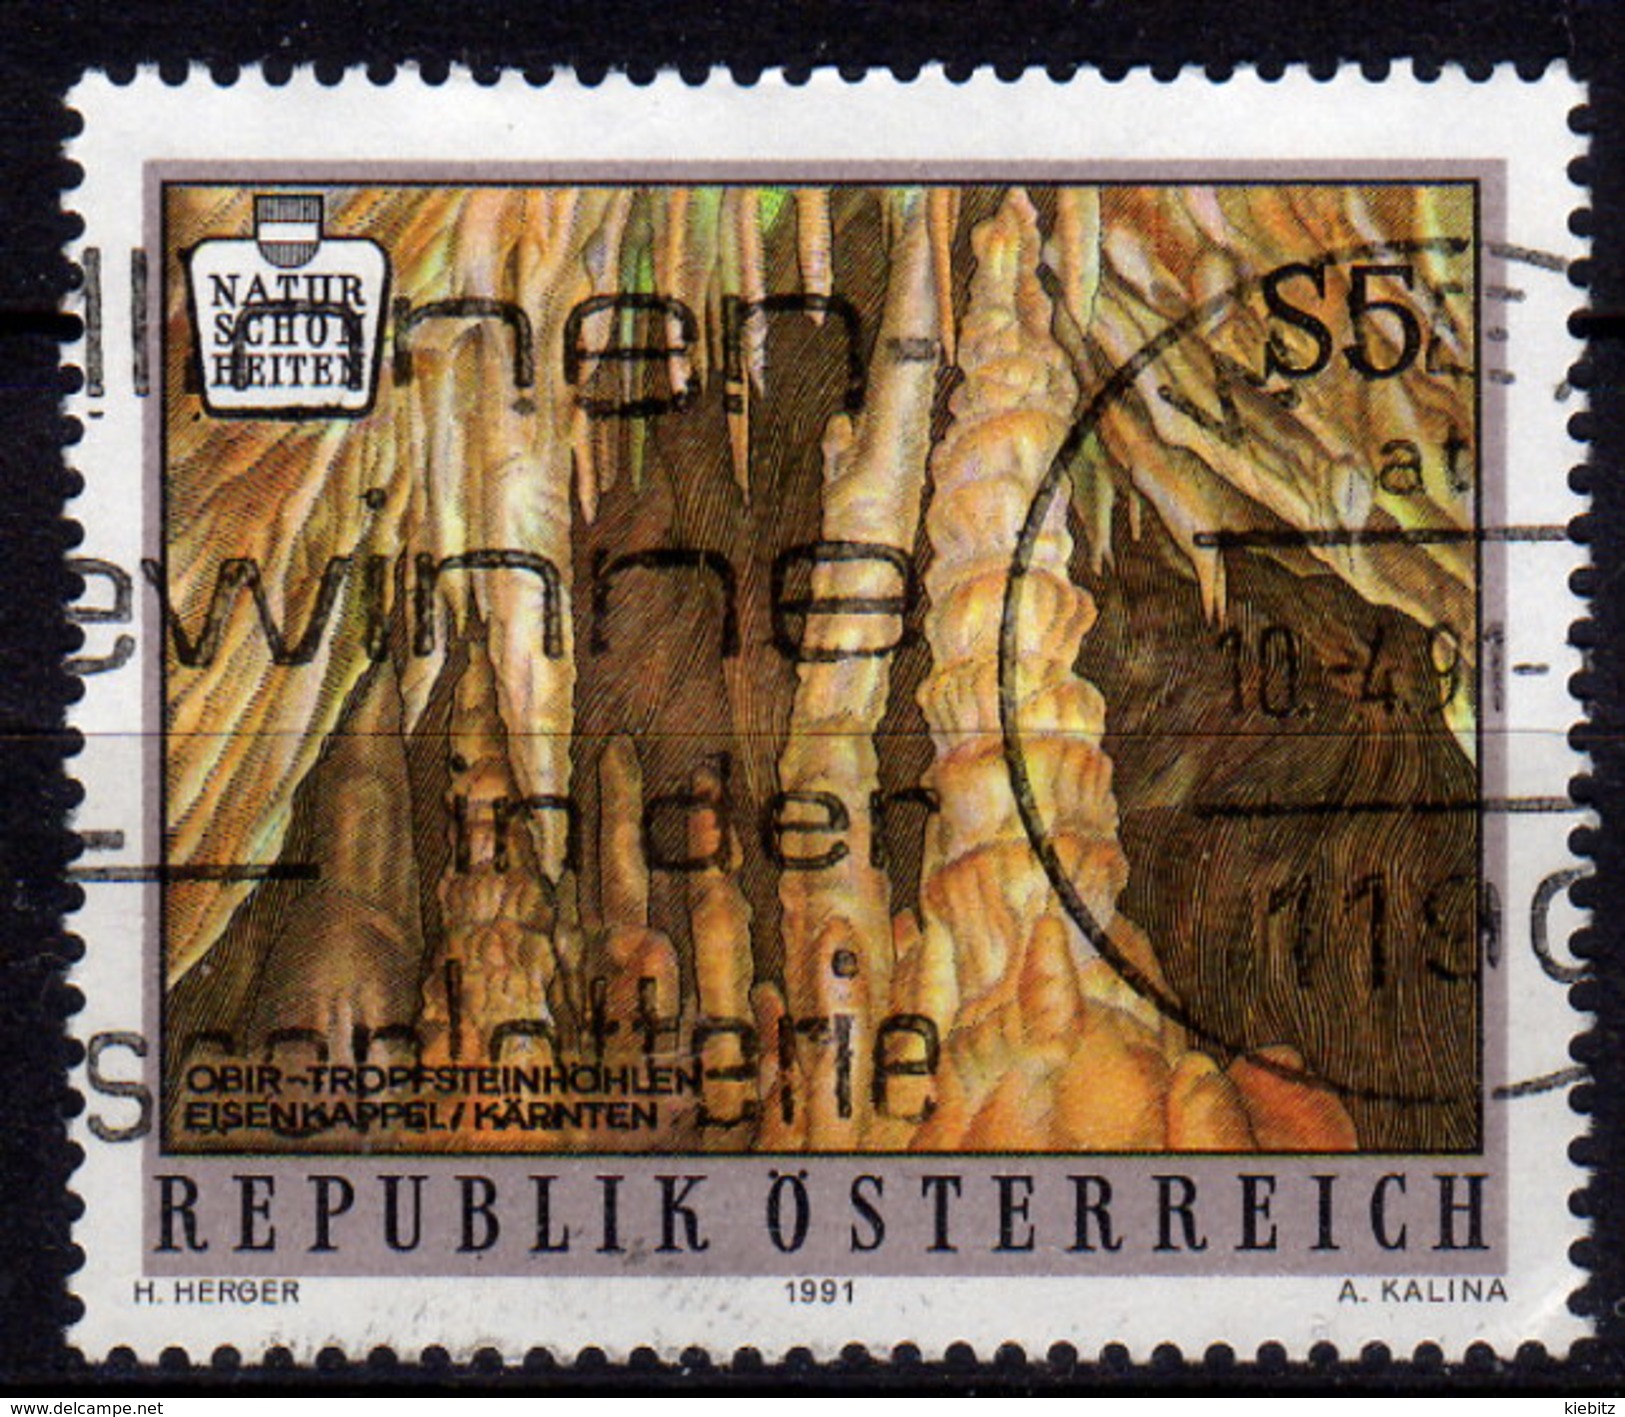 ÖSTERREICH 1991 - Naturschönheiten / Tropfsteinhöhle Eisenkappel - ANK 2054 - Natur